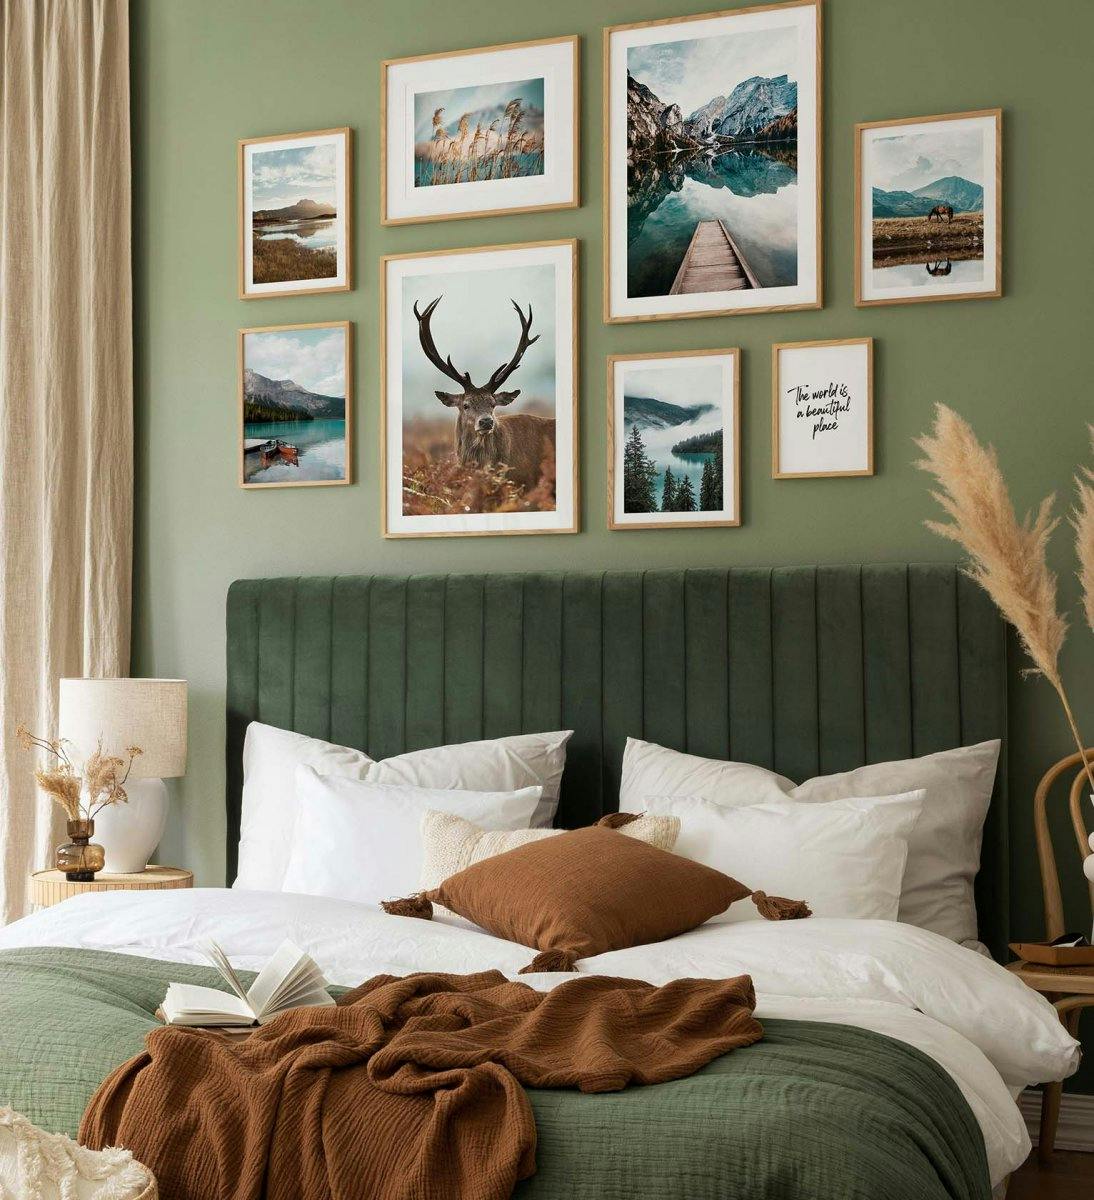 Eläin- ja luontogallerian seinä vihreissä väreissä tammikehyksillä makuuhuoneeseen